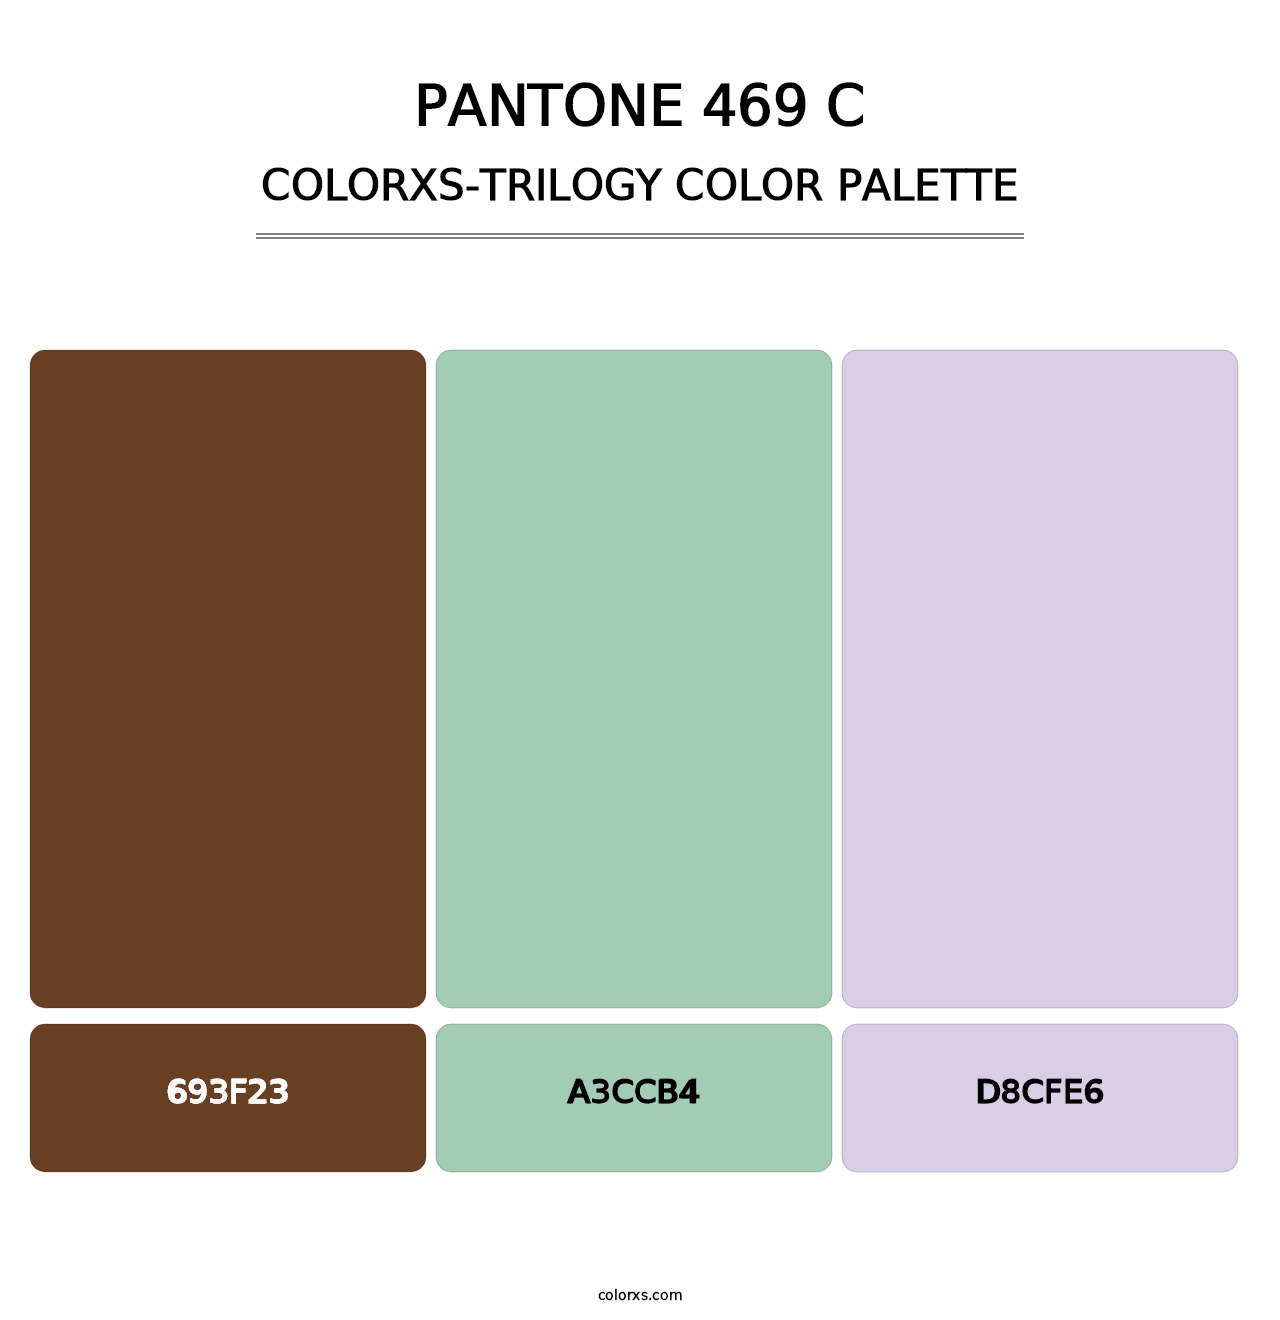 PANTONE 469 C - Colorxs Trilogy Palette